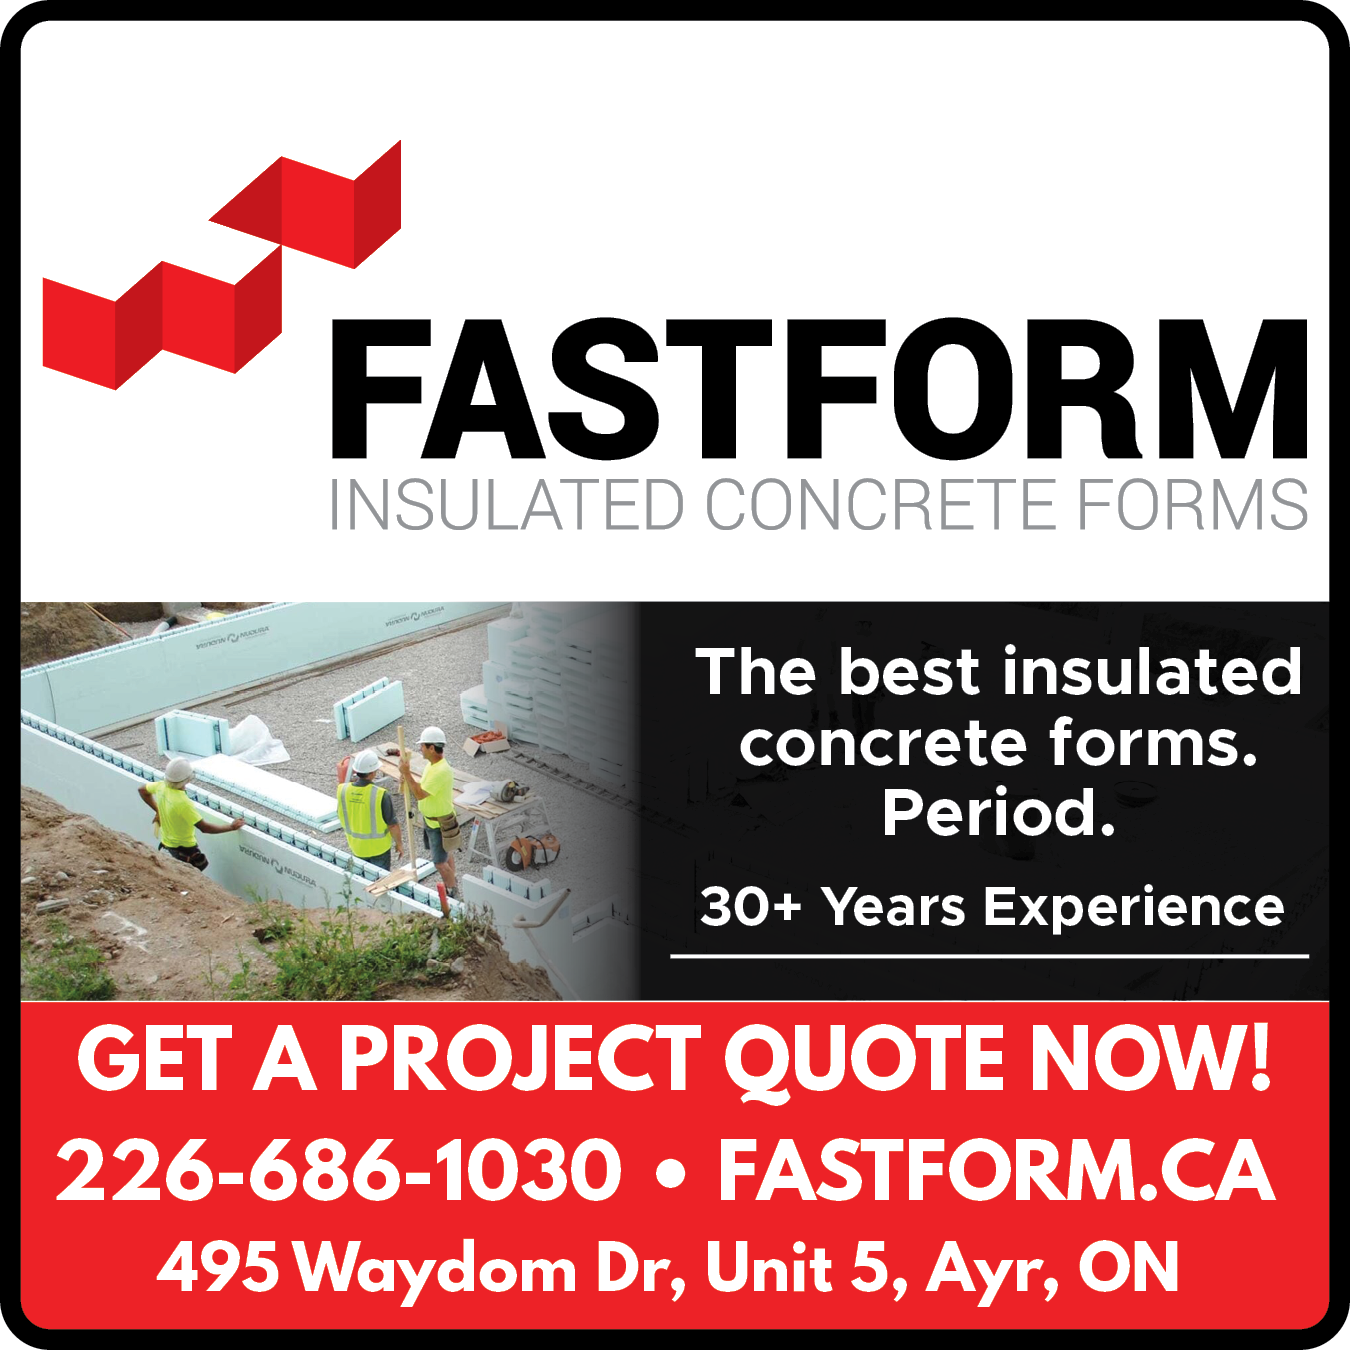 Fastform Insulated Concrete Forms